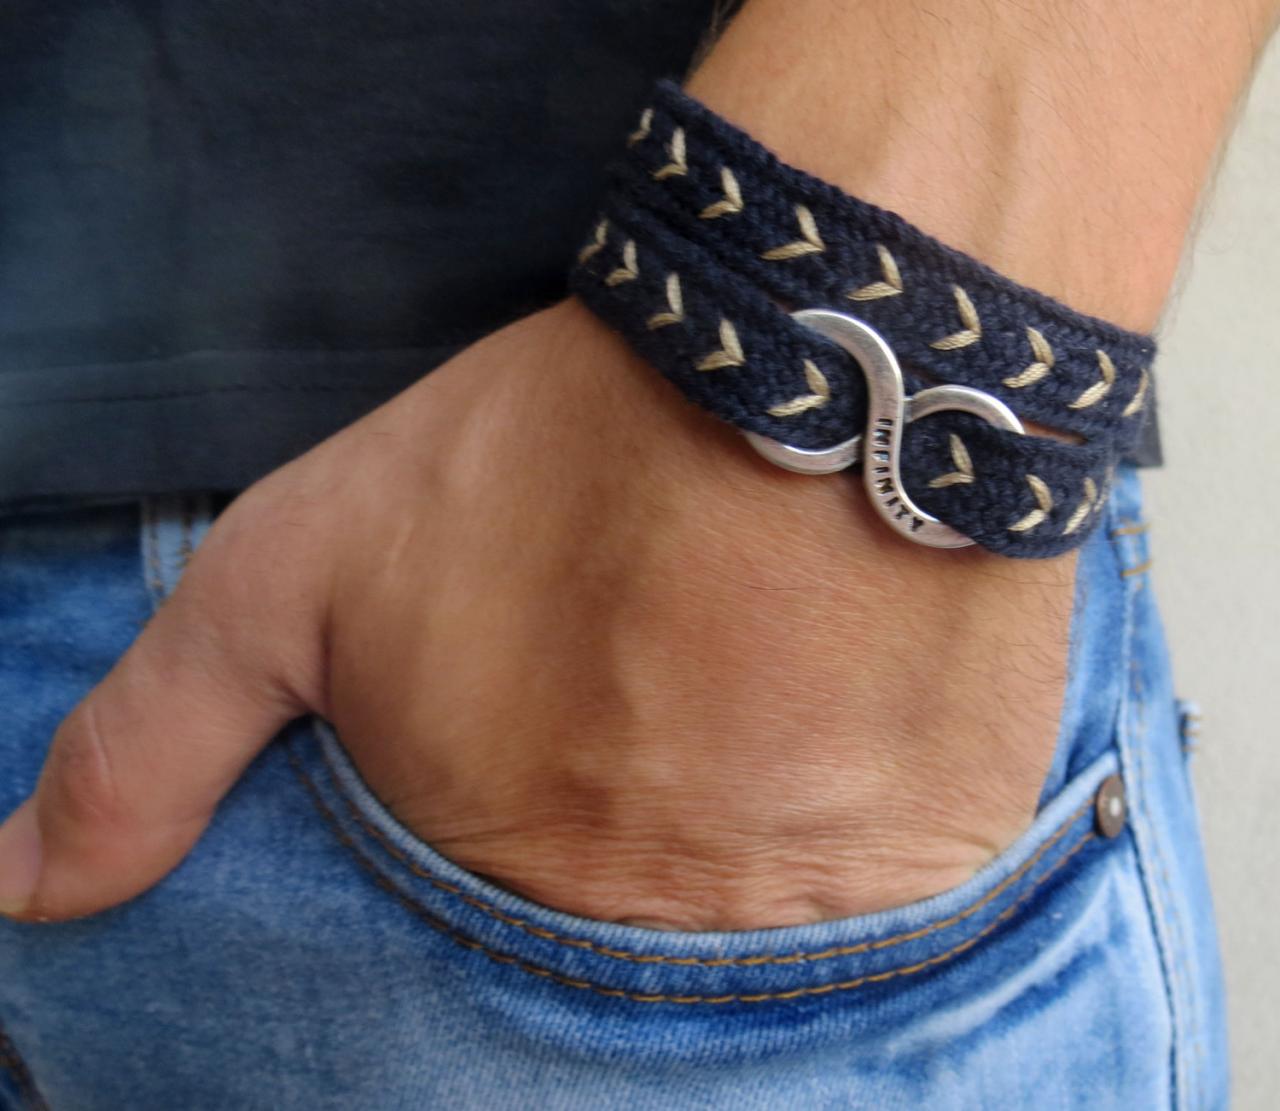 Men's Bracelet - Men's Infinity Bracelet - Men's Jewelry - Men's Gift - Boyfrienf Gift - Husband Gift - Gift